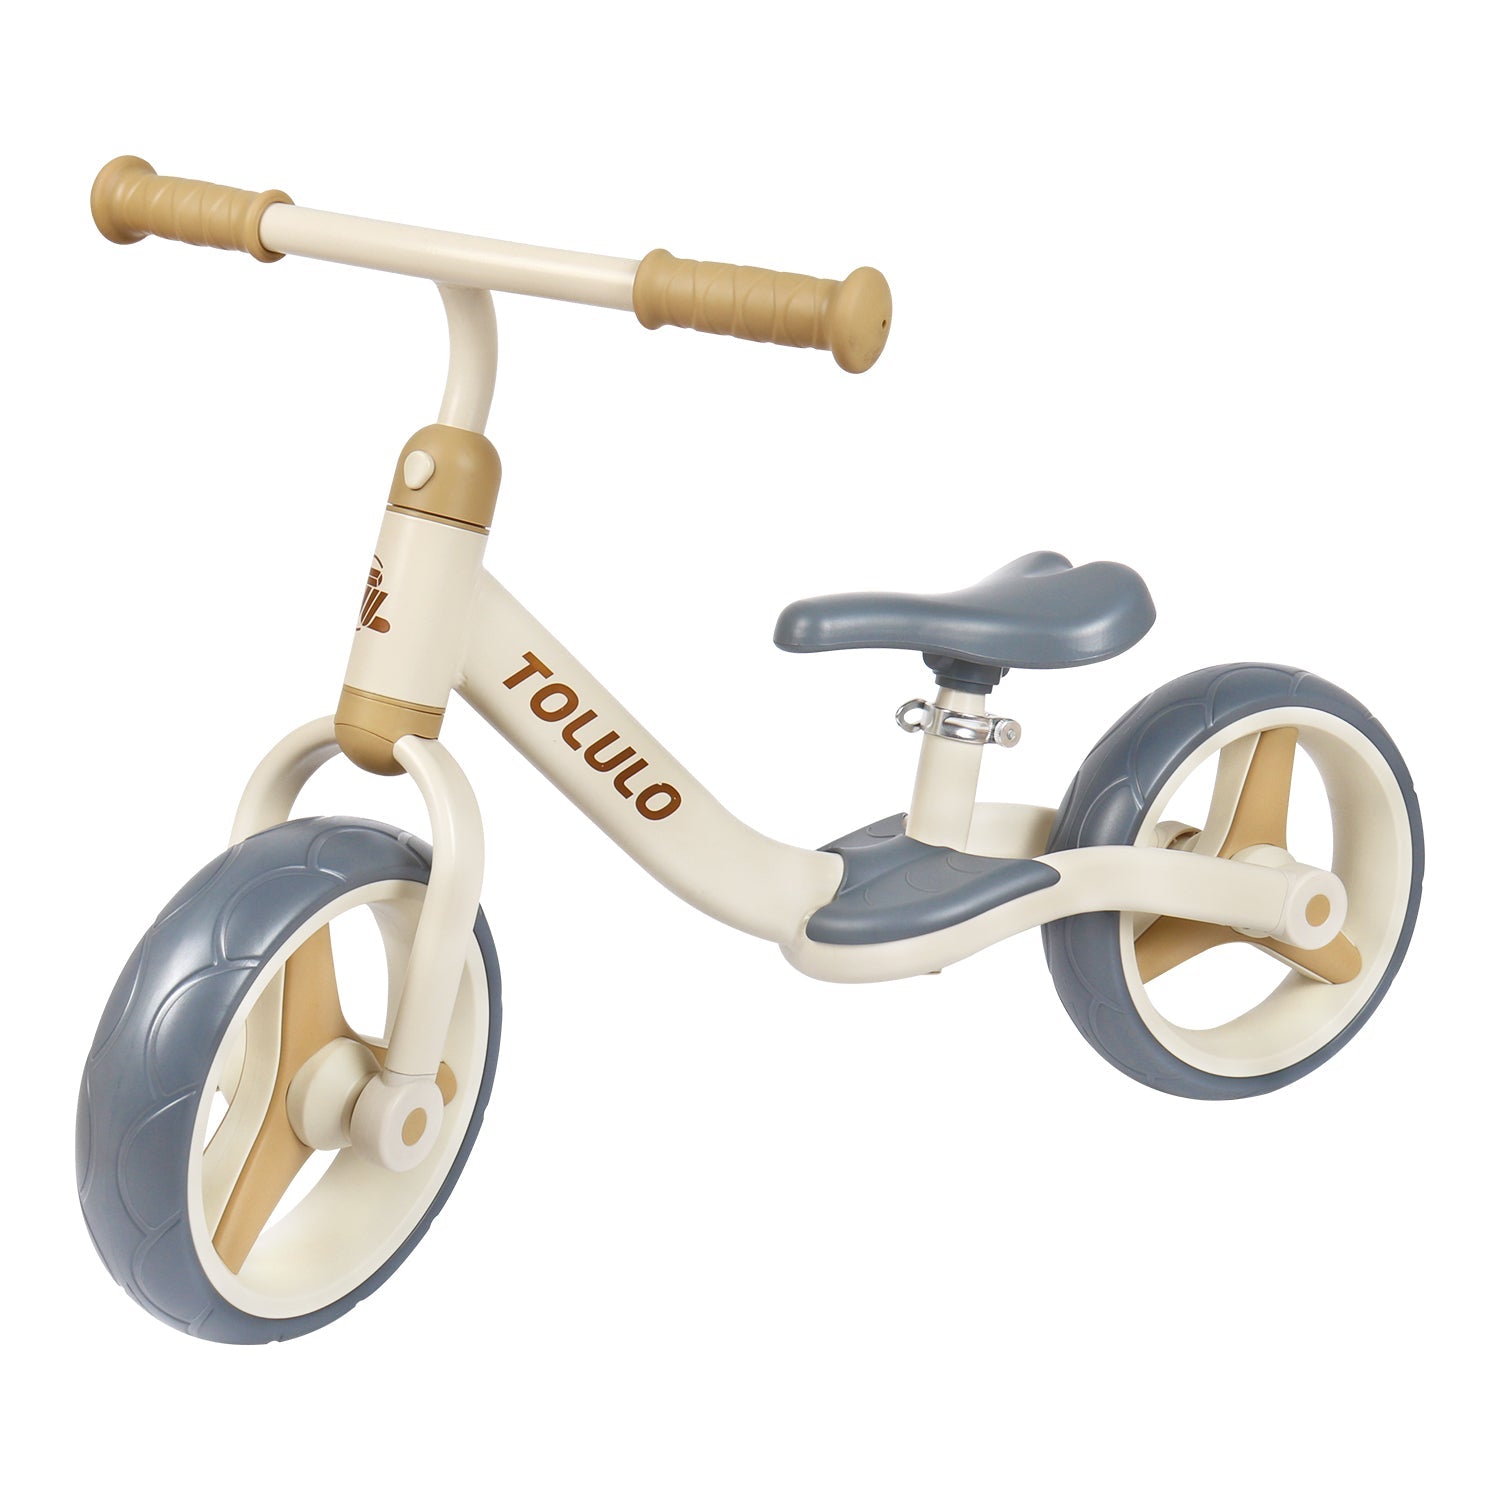 Bicicleta de equilíbrio de 10" para crianças dos 2-6 anos